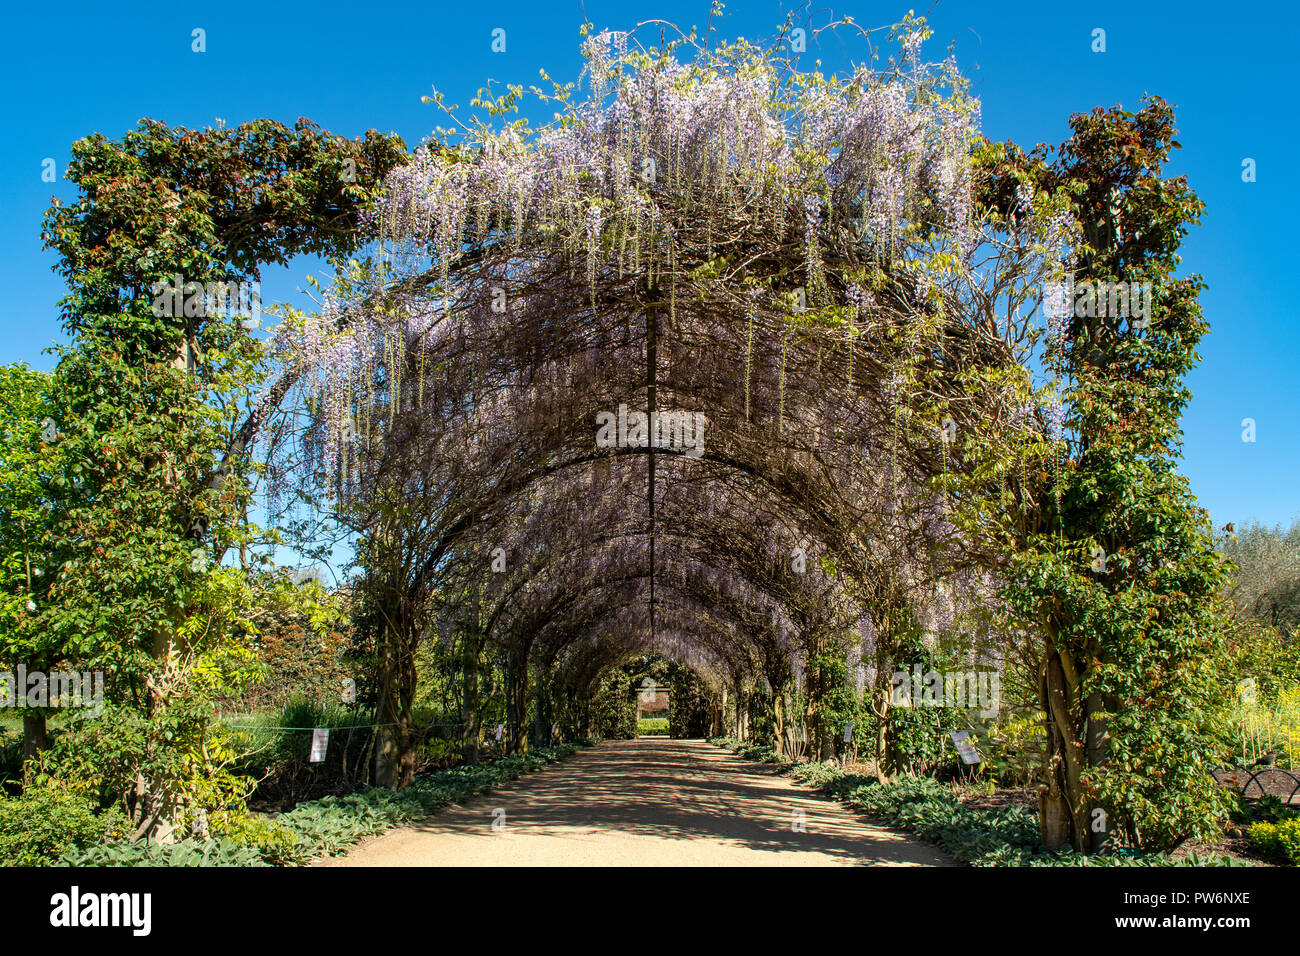 Wisteria Archway at Alowyn Gardens, Yarra Glen, Victoria, Australia Stock Photo